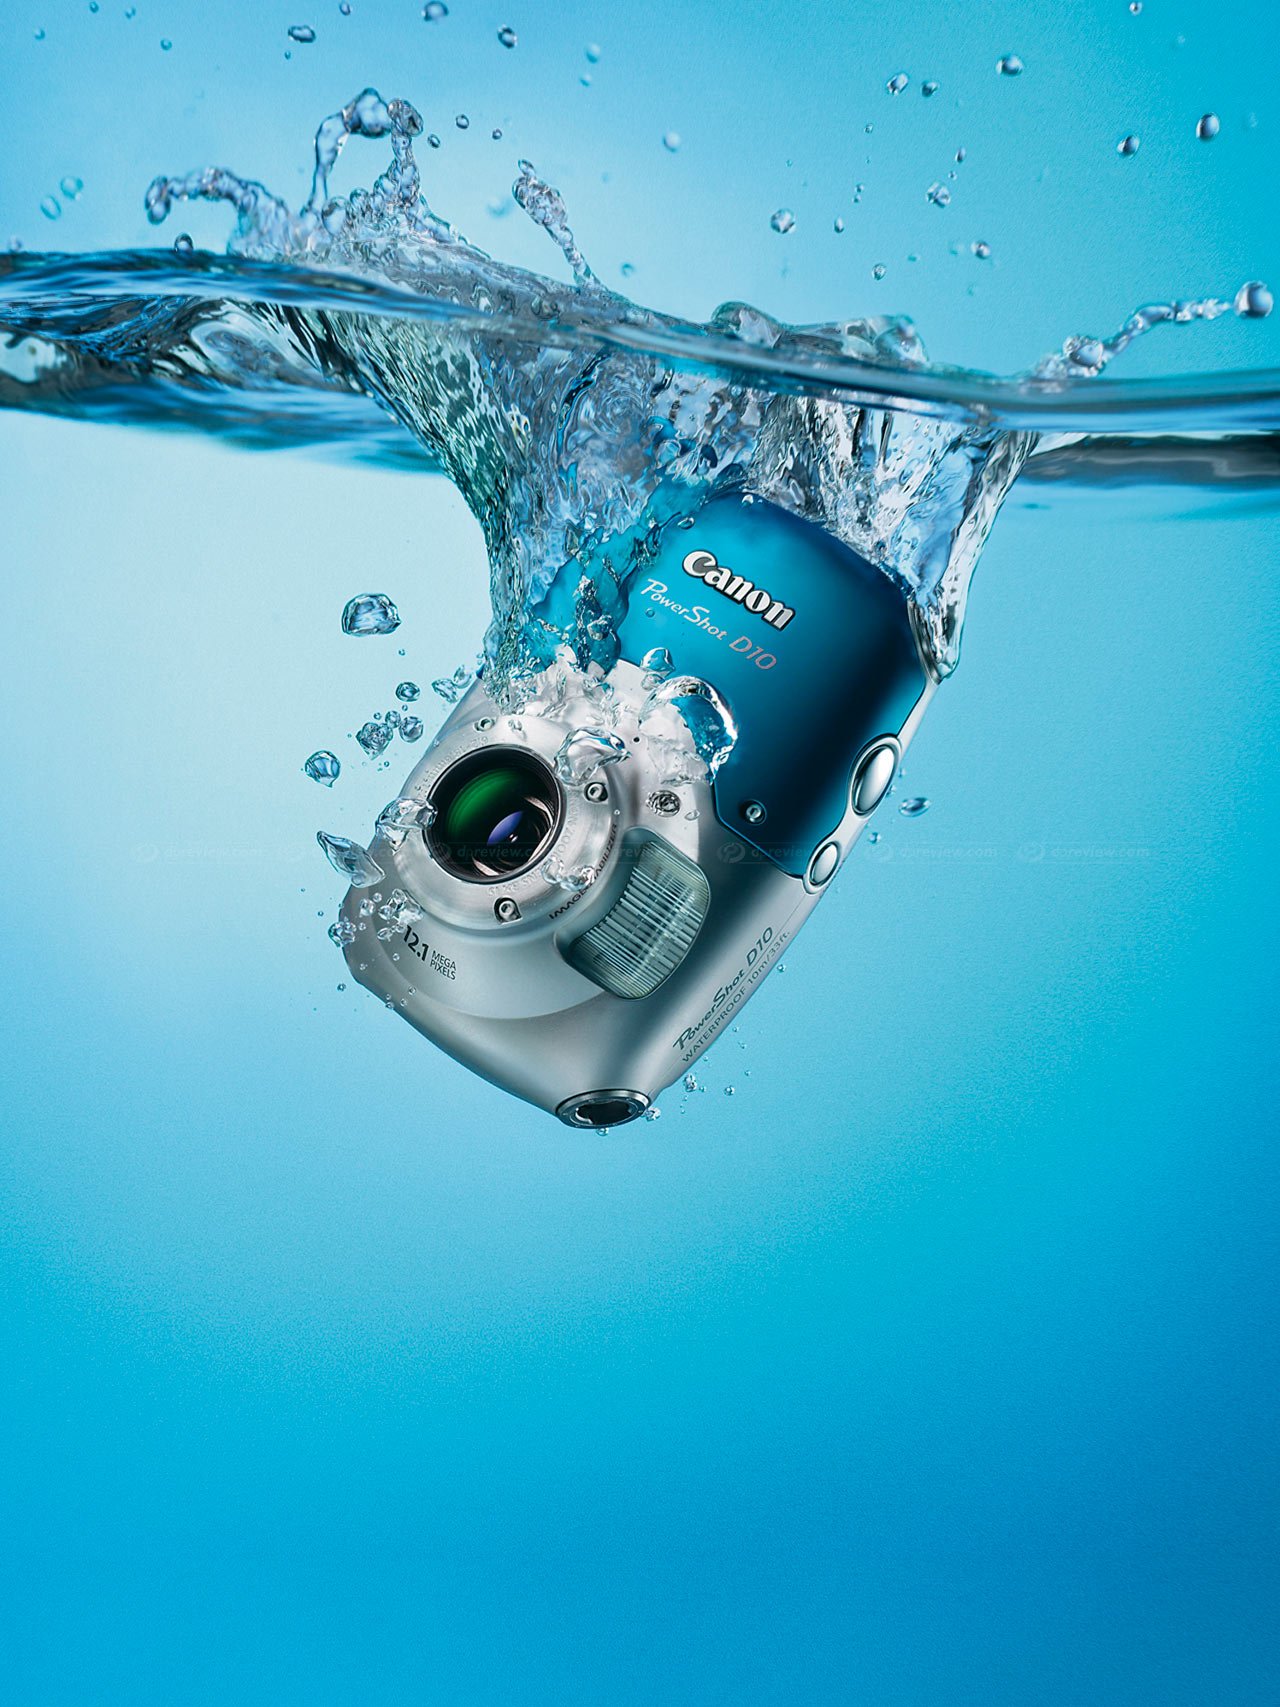 Joseph Banks Zwakheid Krijt Waterproof camera kopen TOP 10 + tips